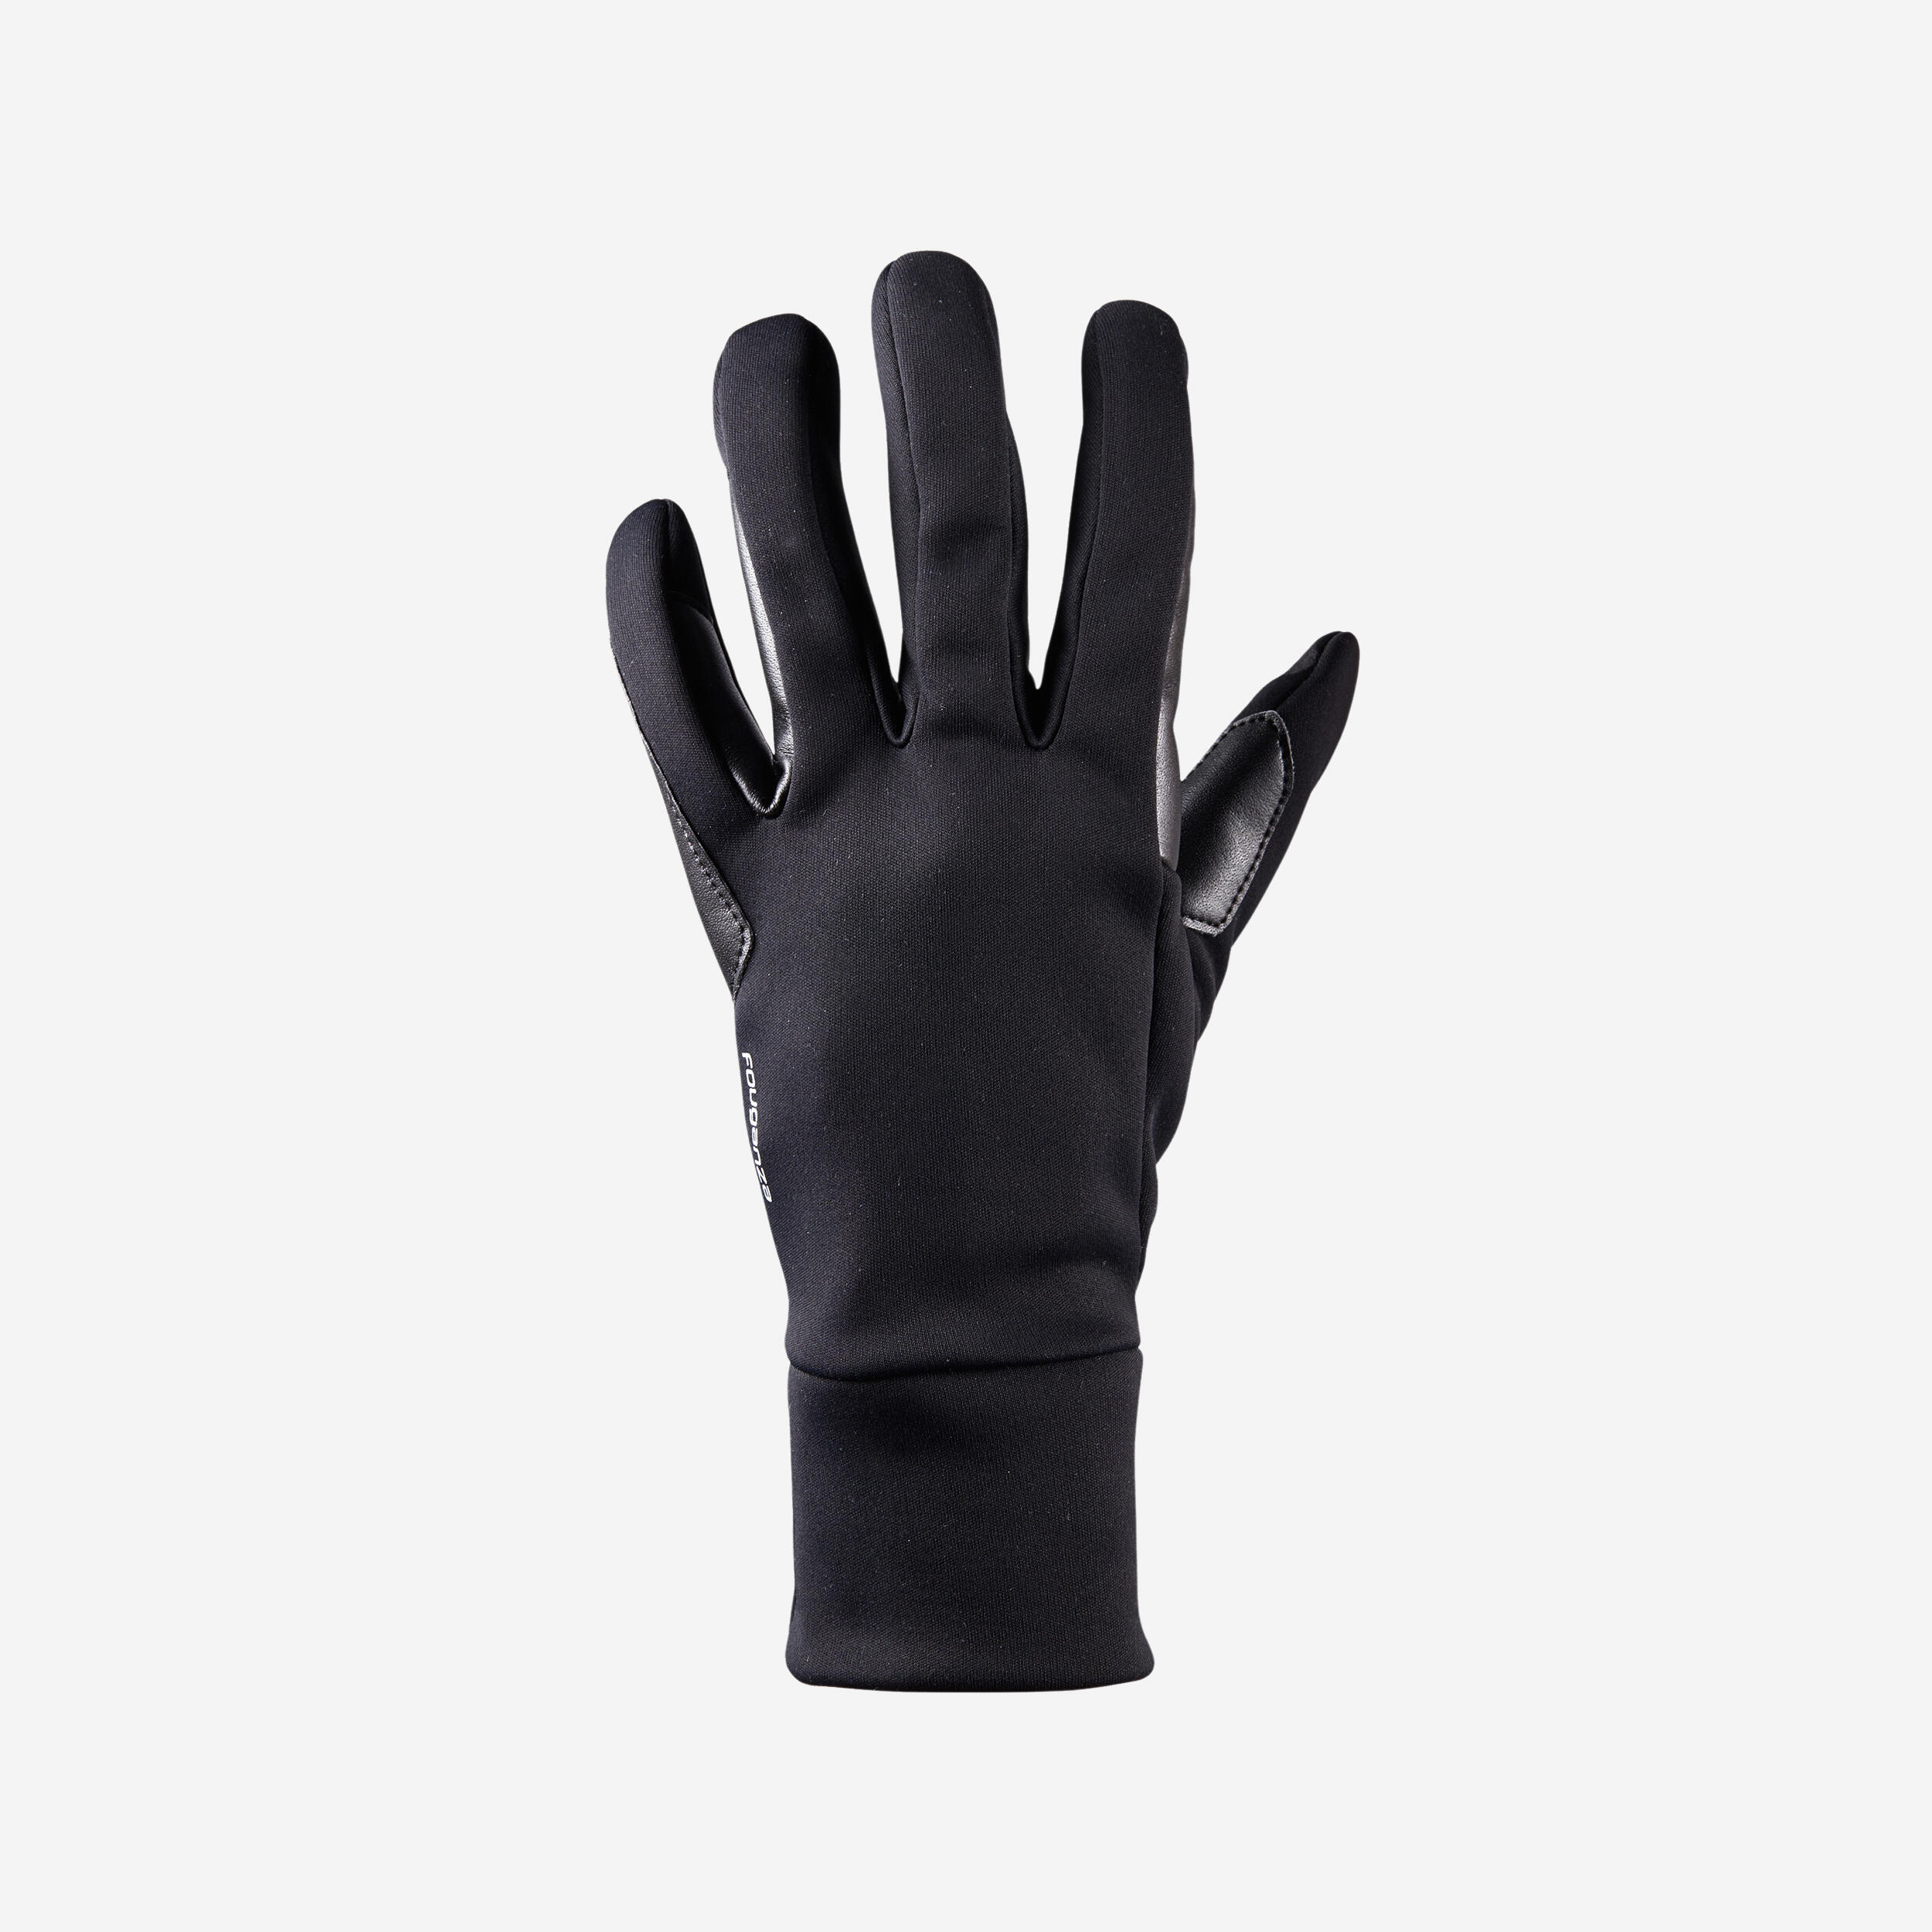 gants chauds d'équitation femme 100 warm noir - fouganza